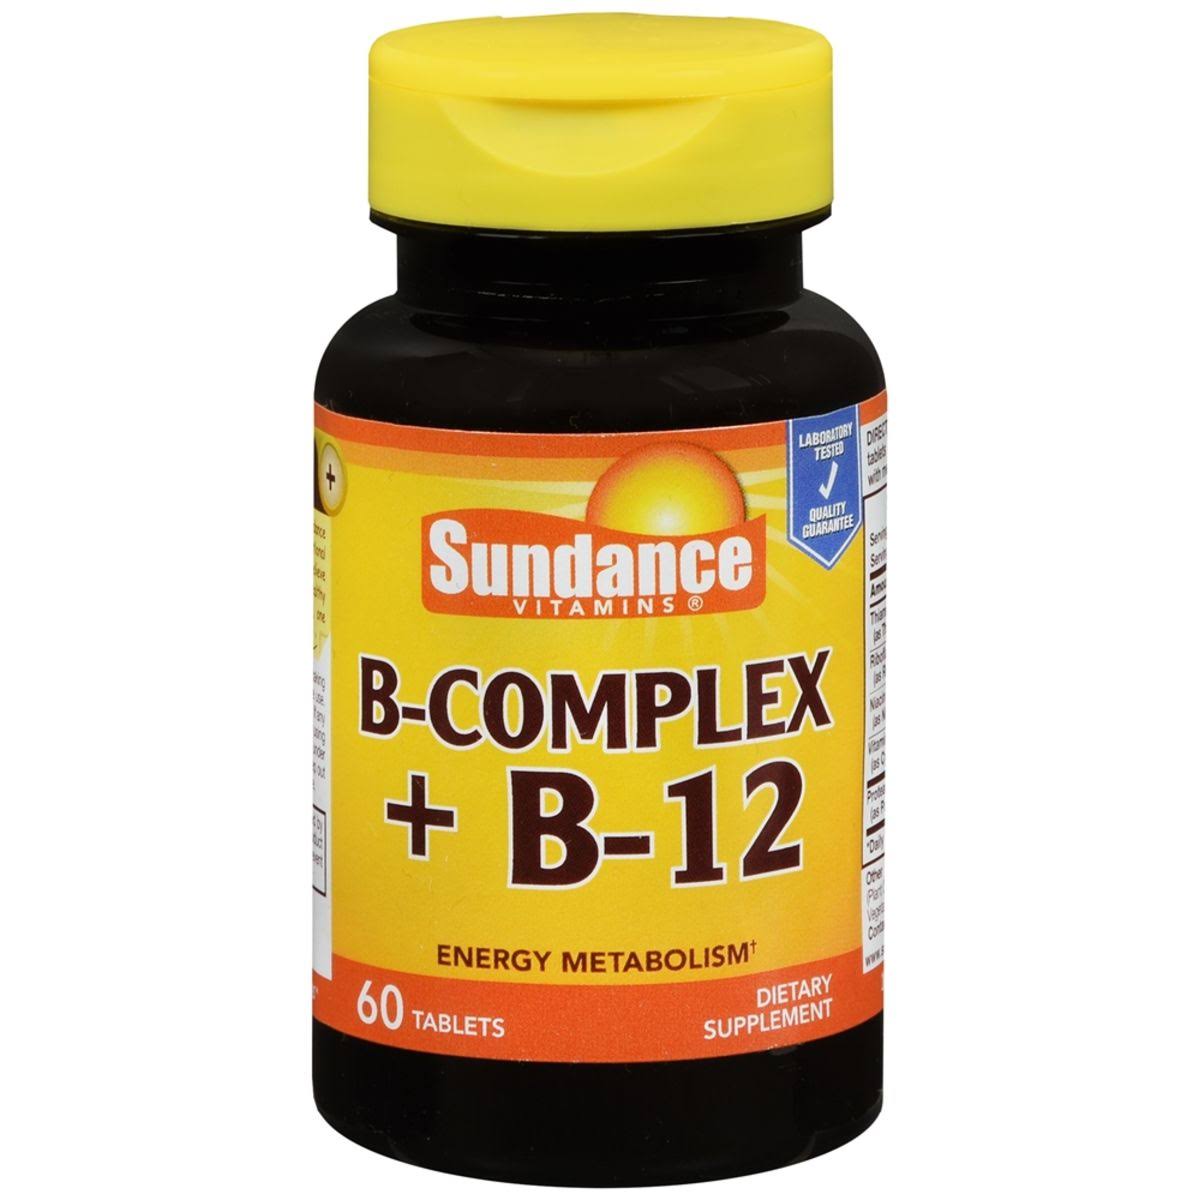 Sundance Vitamins B-Complex + B-12 Tablets 60 Tabs